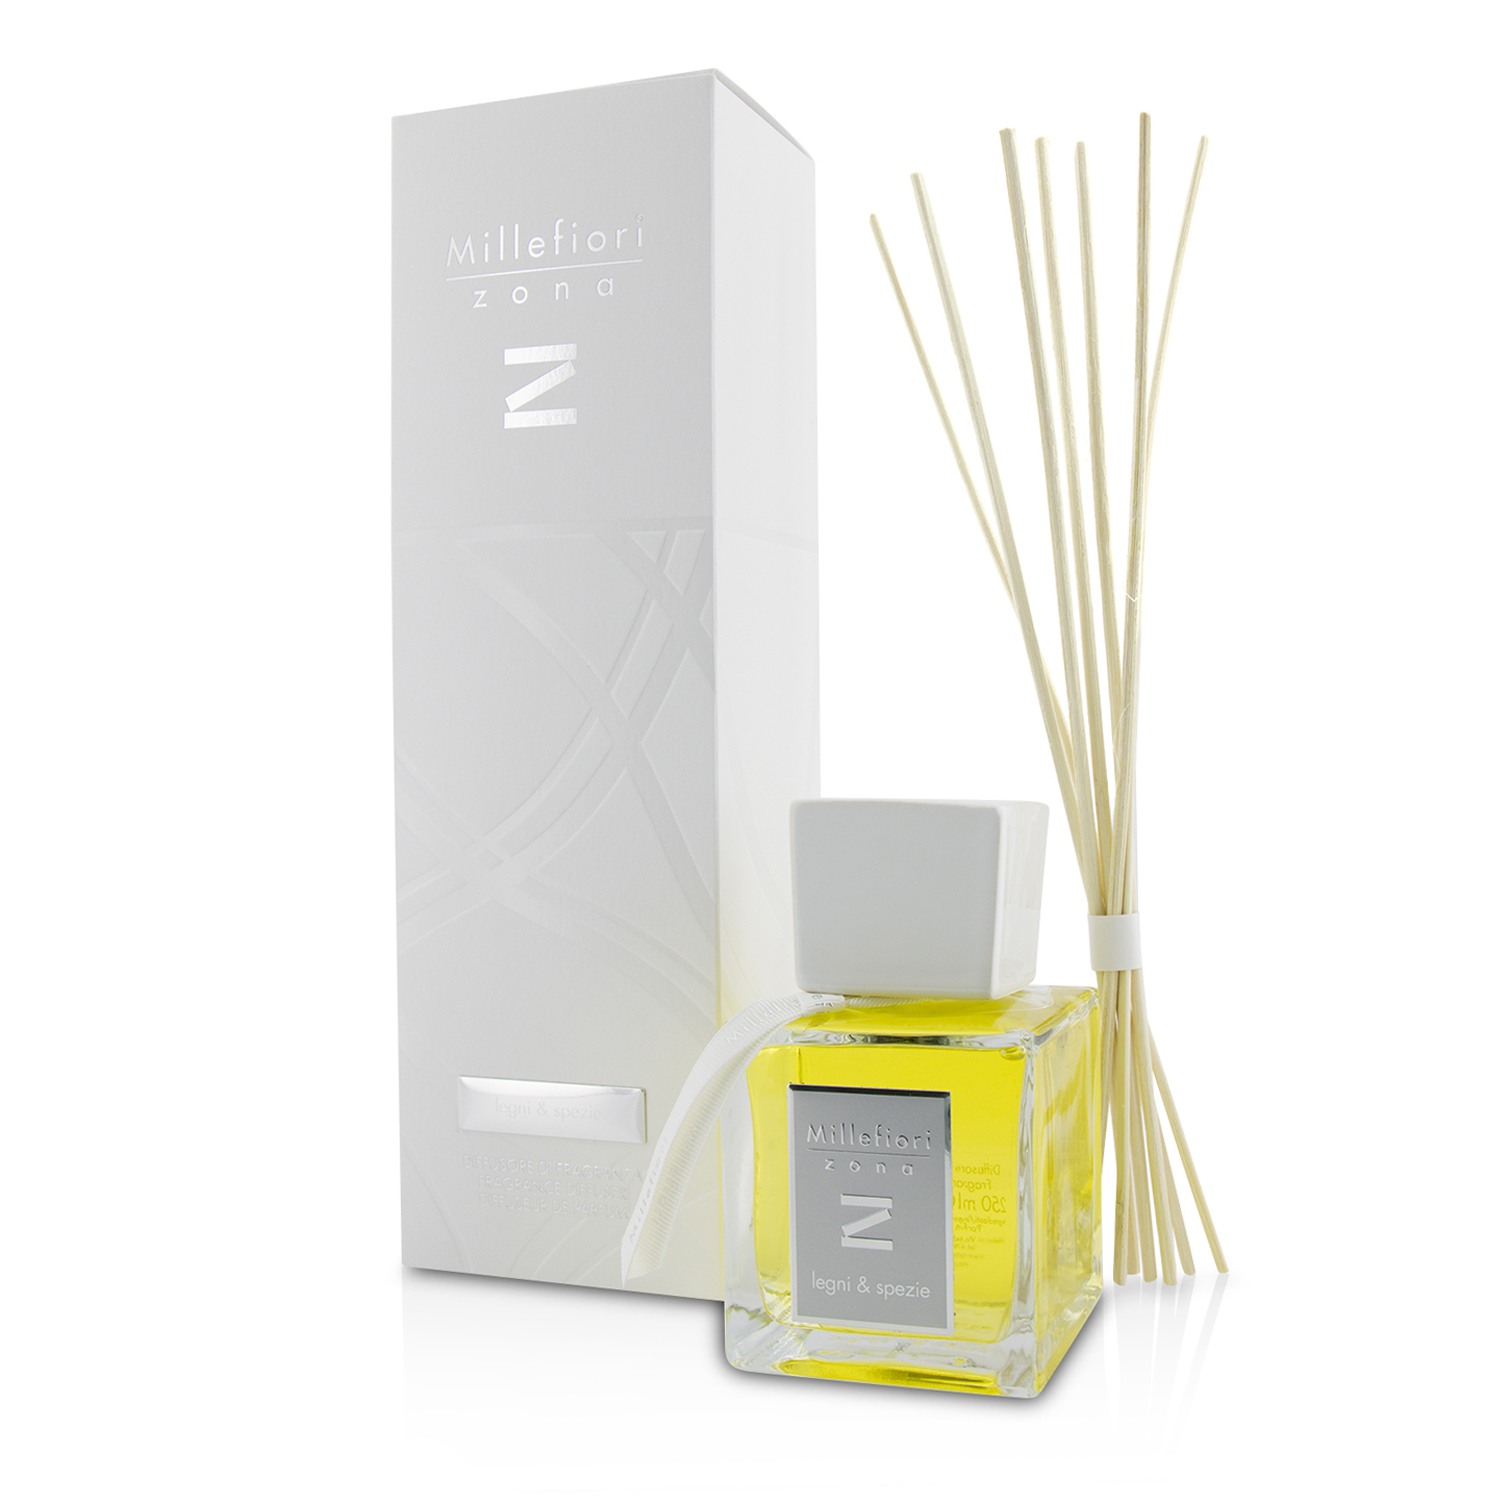 Zona Fragrance Diffuser - Legni E Spezie (New Packaging) Millefiori Image